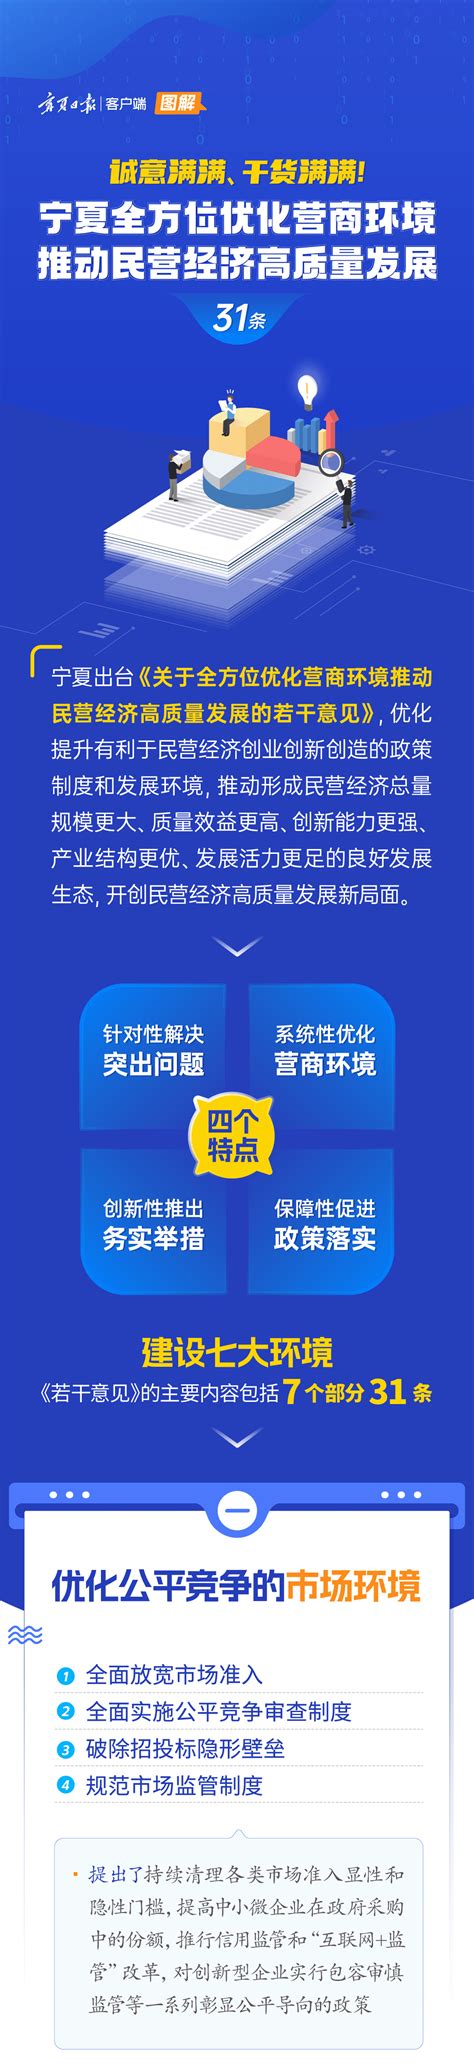 宁夏为建设全国“数字供销”示范区按下“快进键”-宁夏新闻网